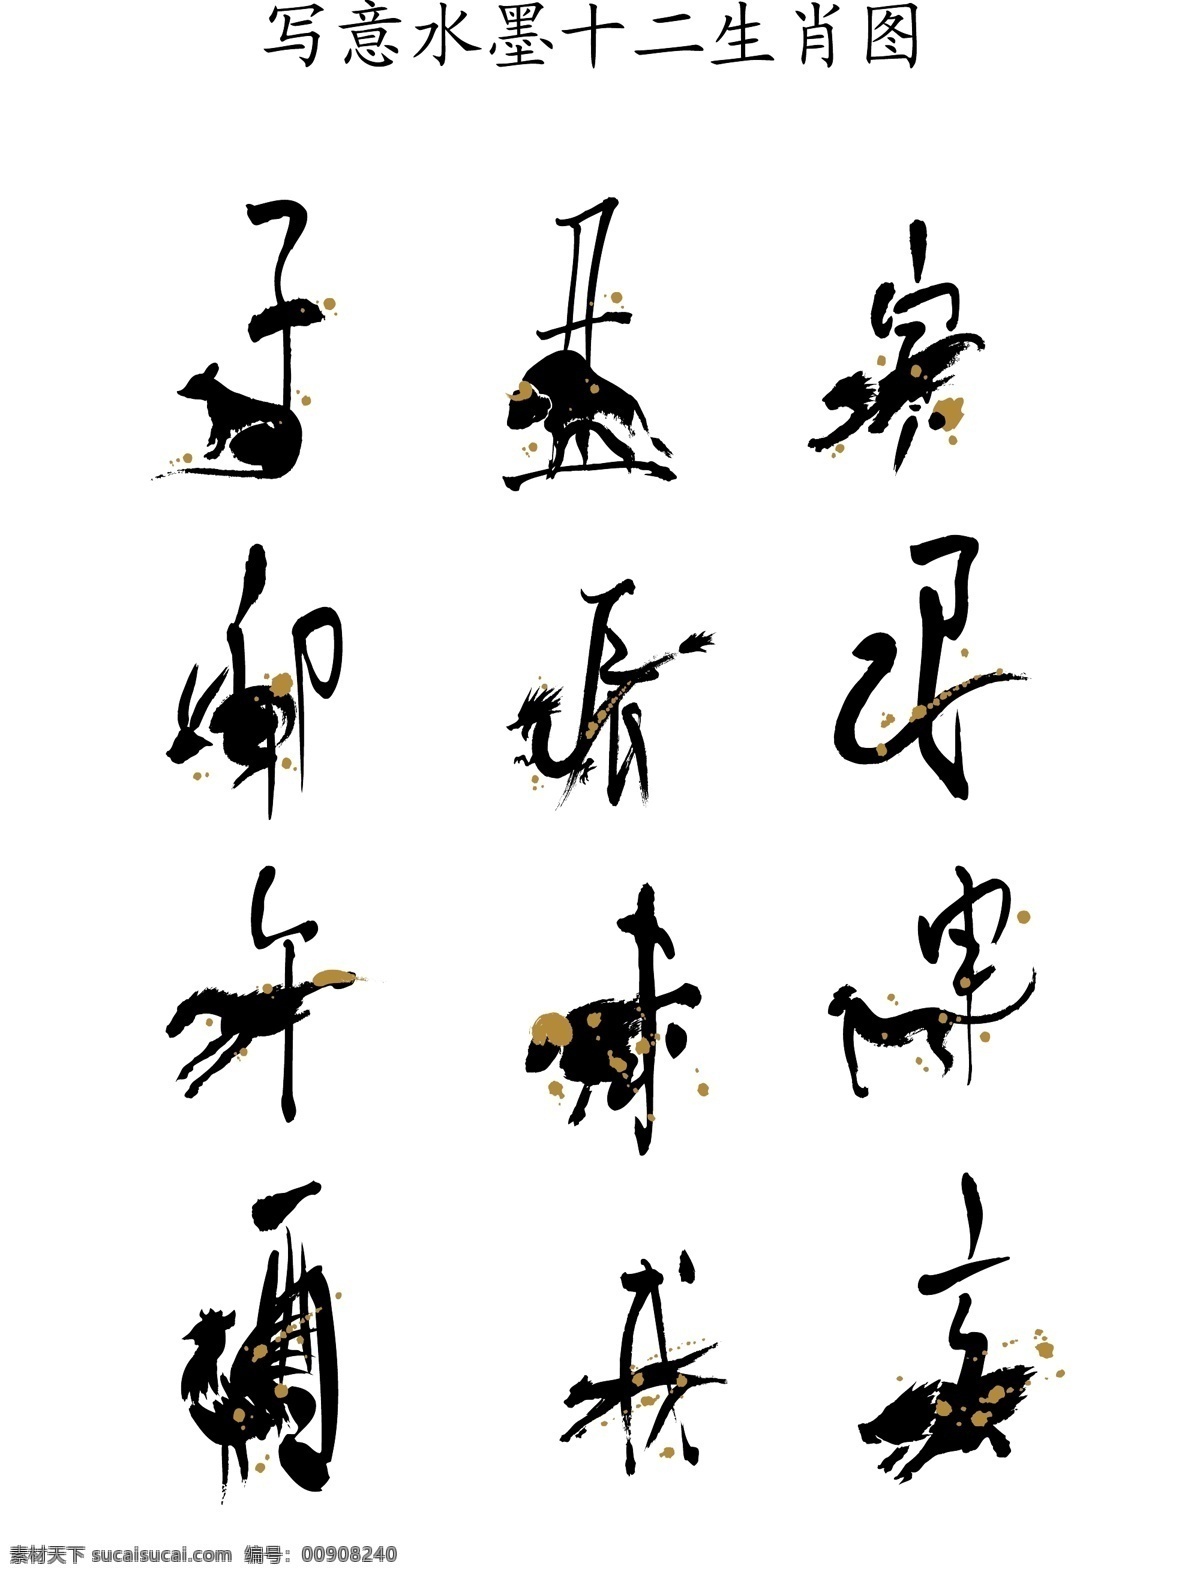 中国 风 水墨 十二生肖 矢量图 传统图案 商业矢量 矢量下载 网页矢量 其他矢量图